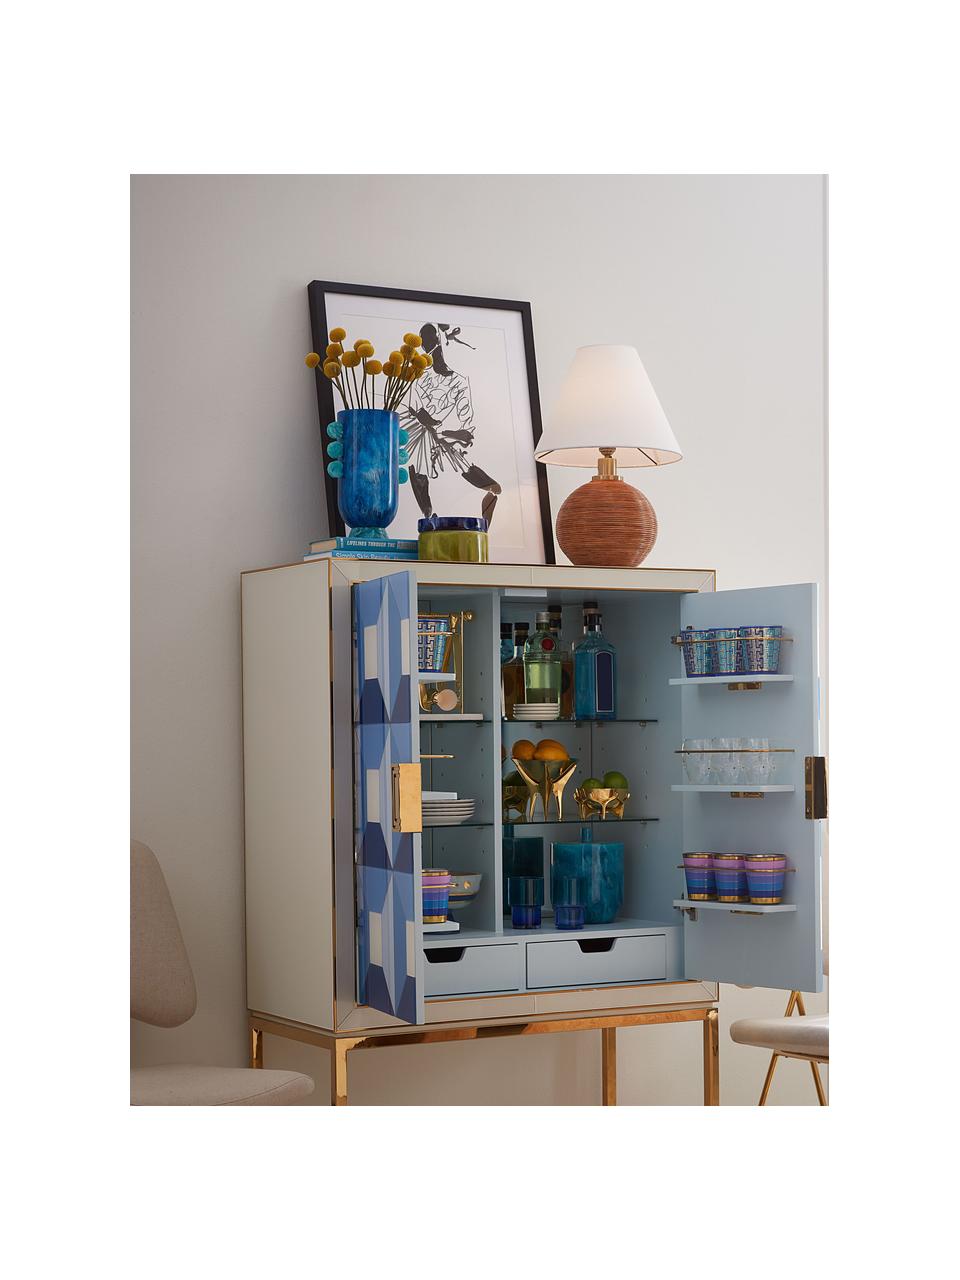 Vaso fatto a mano effetto marmo Mustique, alt. 27 cm, Acrilico, lucido, Effetto marmo tonalità blu, Larg. 19 x Alt. 27 cm